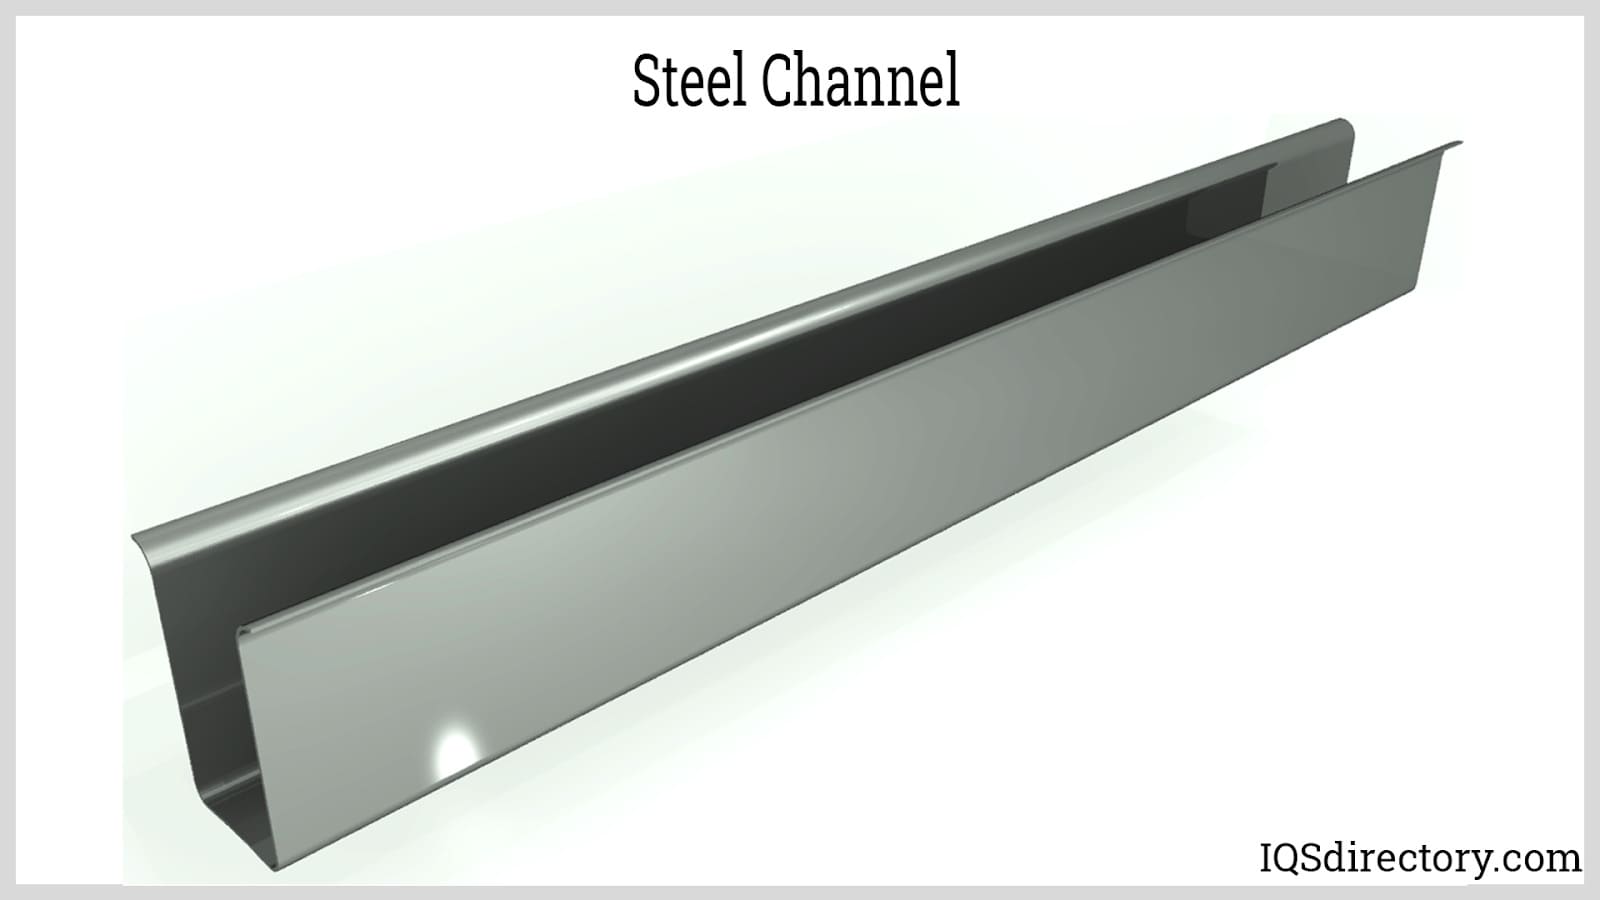 Steel Channels